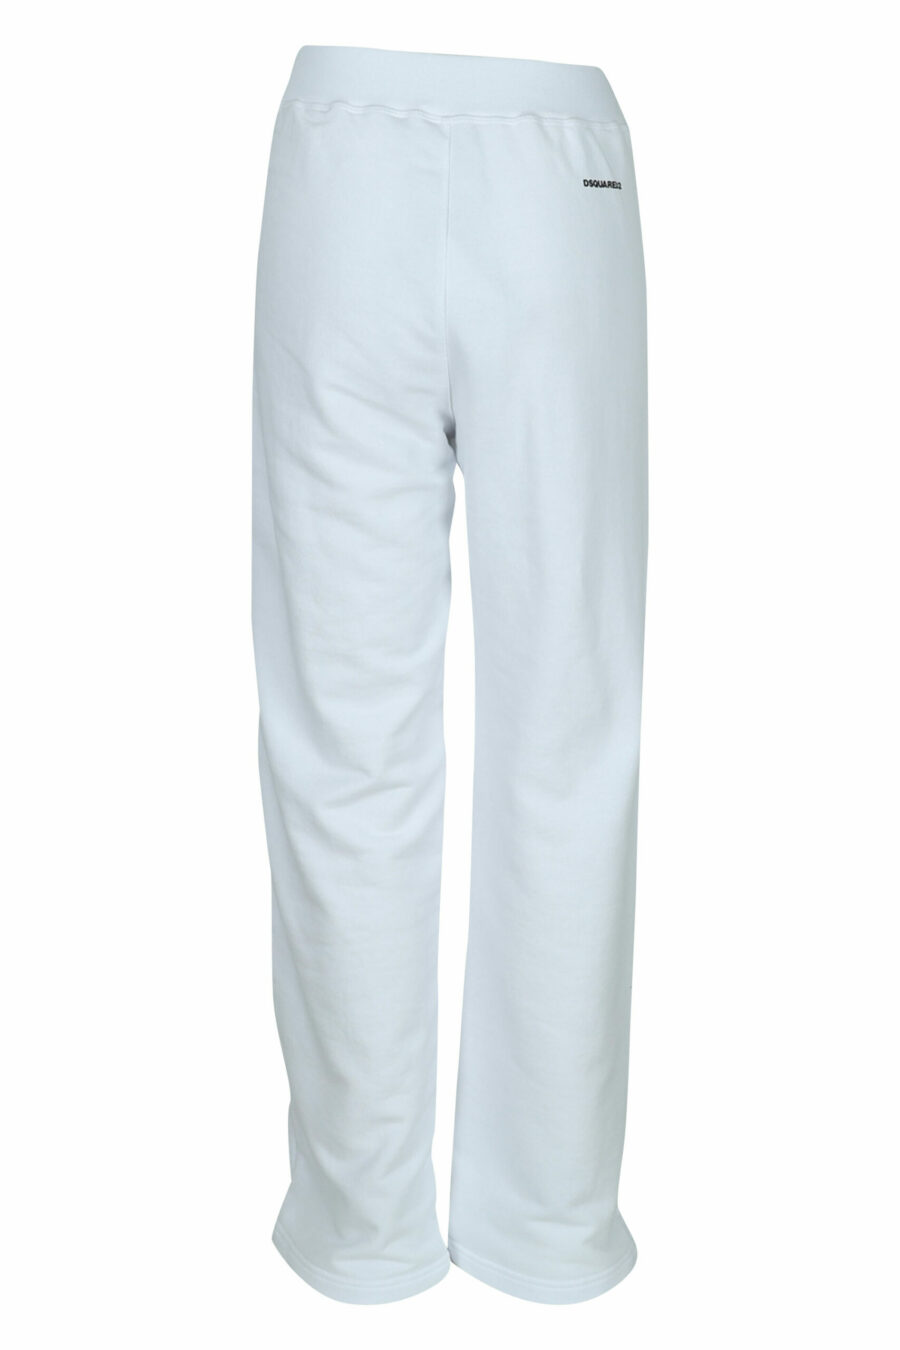 Pantalón blanco ancho con logo - 8054148457884 1 scaled